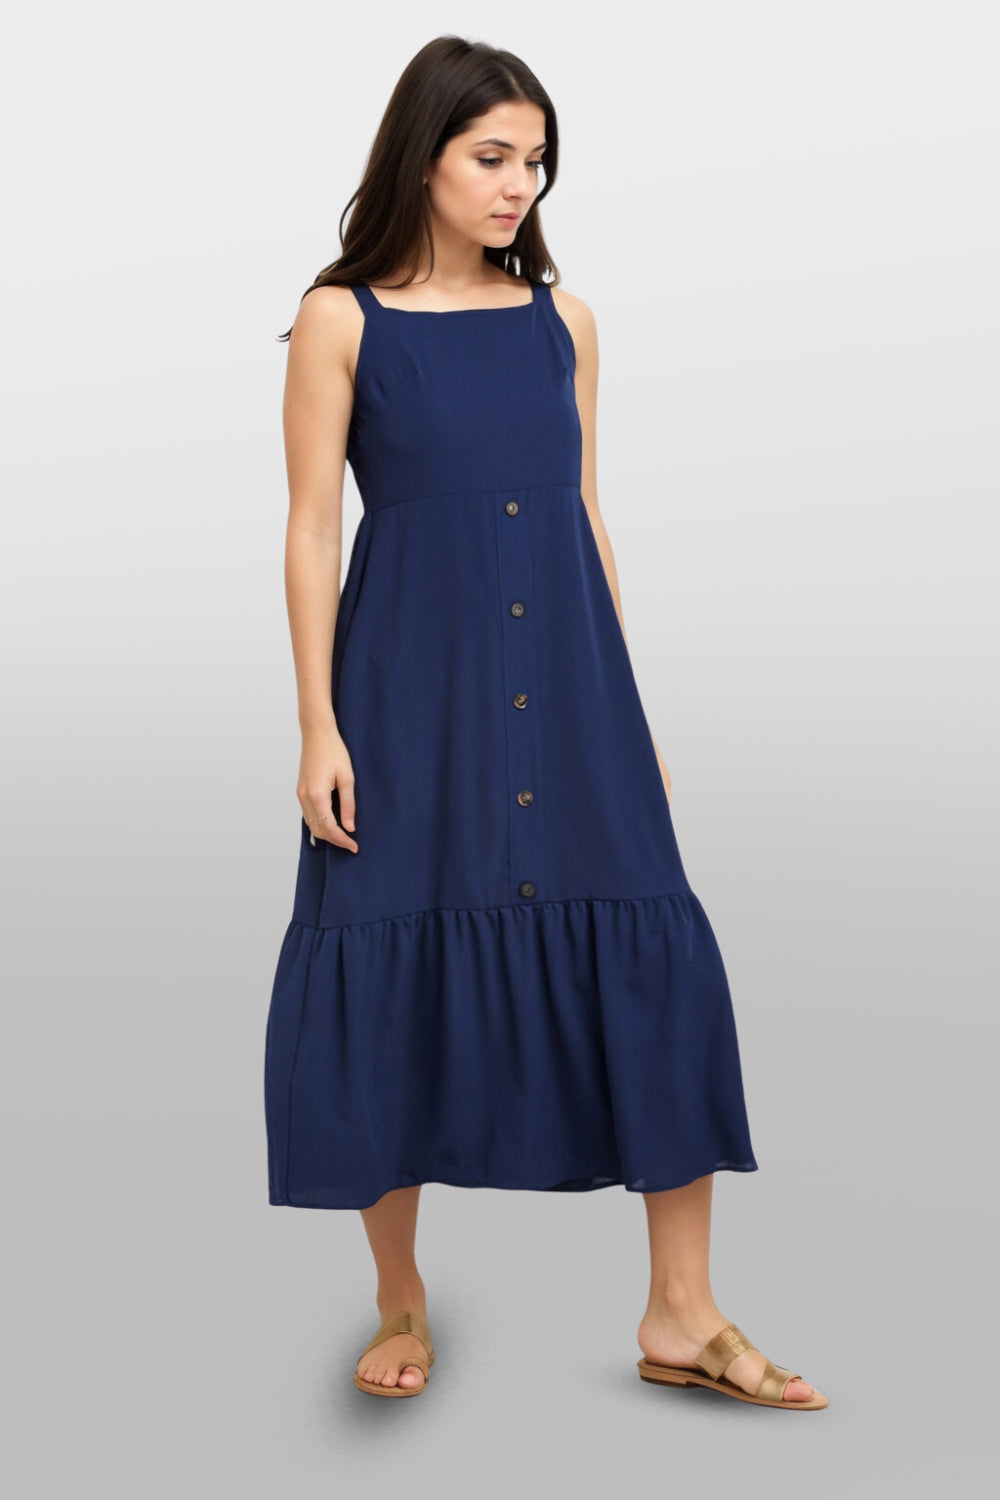 Blue Woven Summer Comfy Flowy Dress